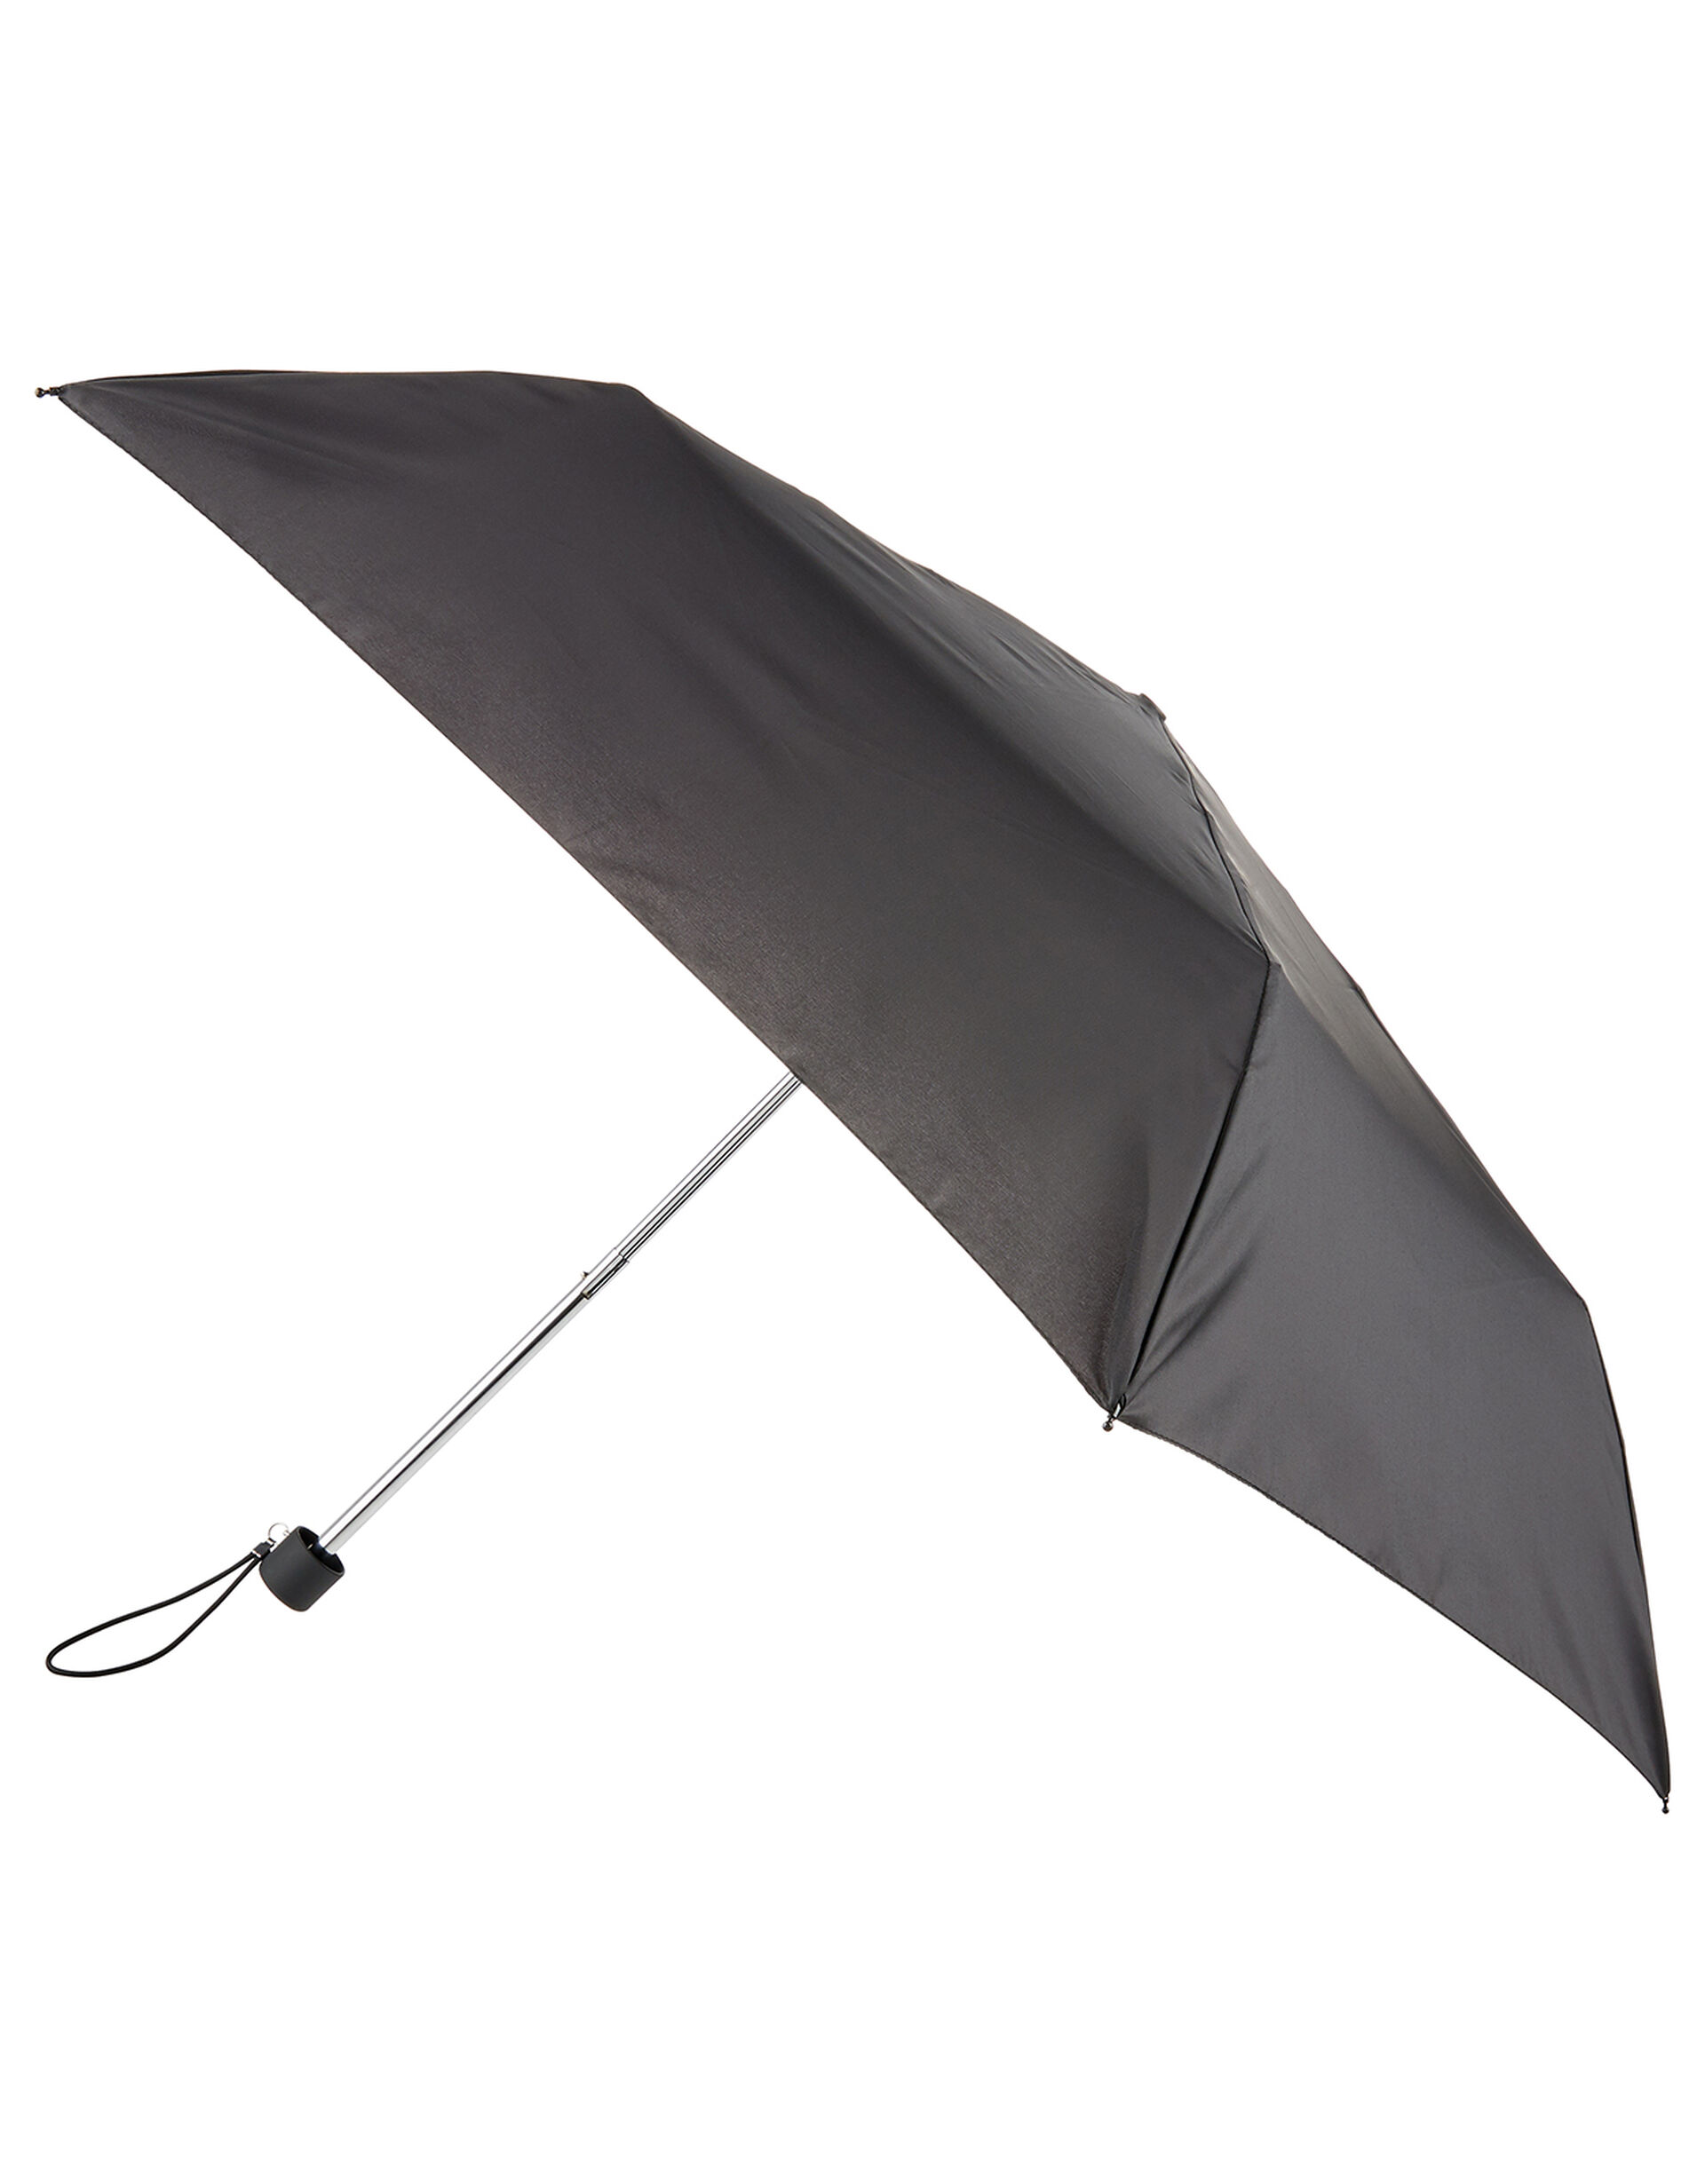 Plain Slim Umbrella, , large